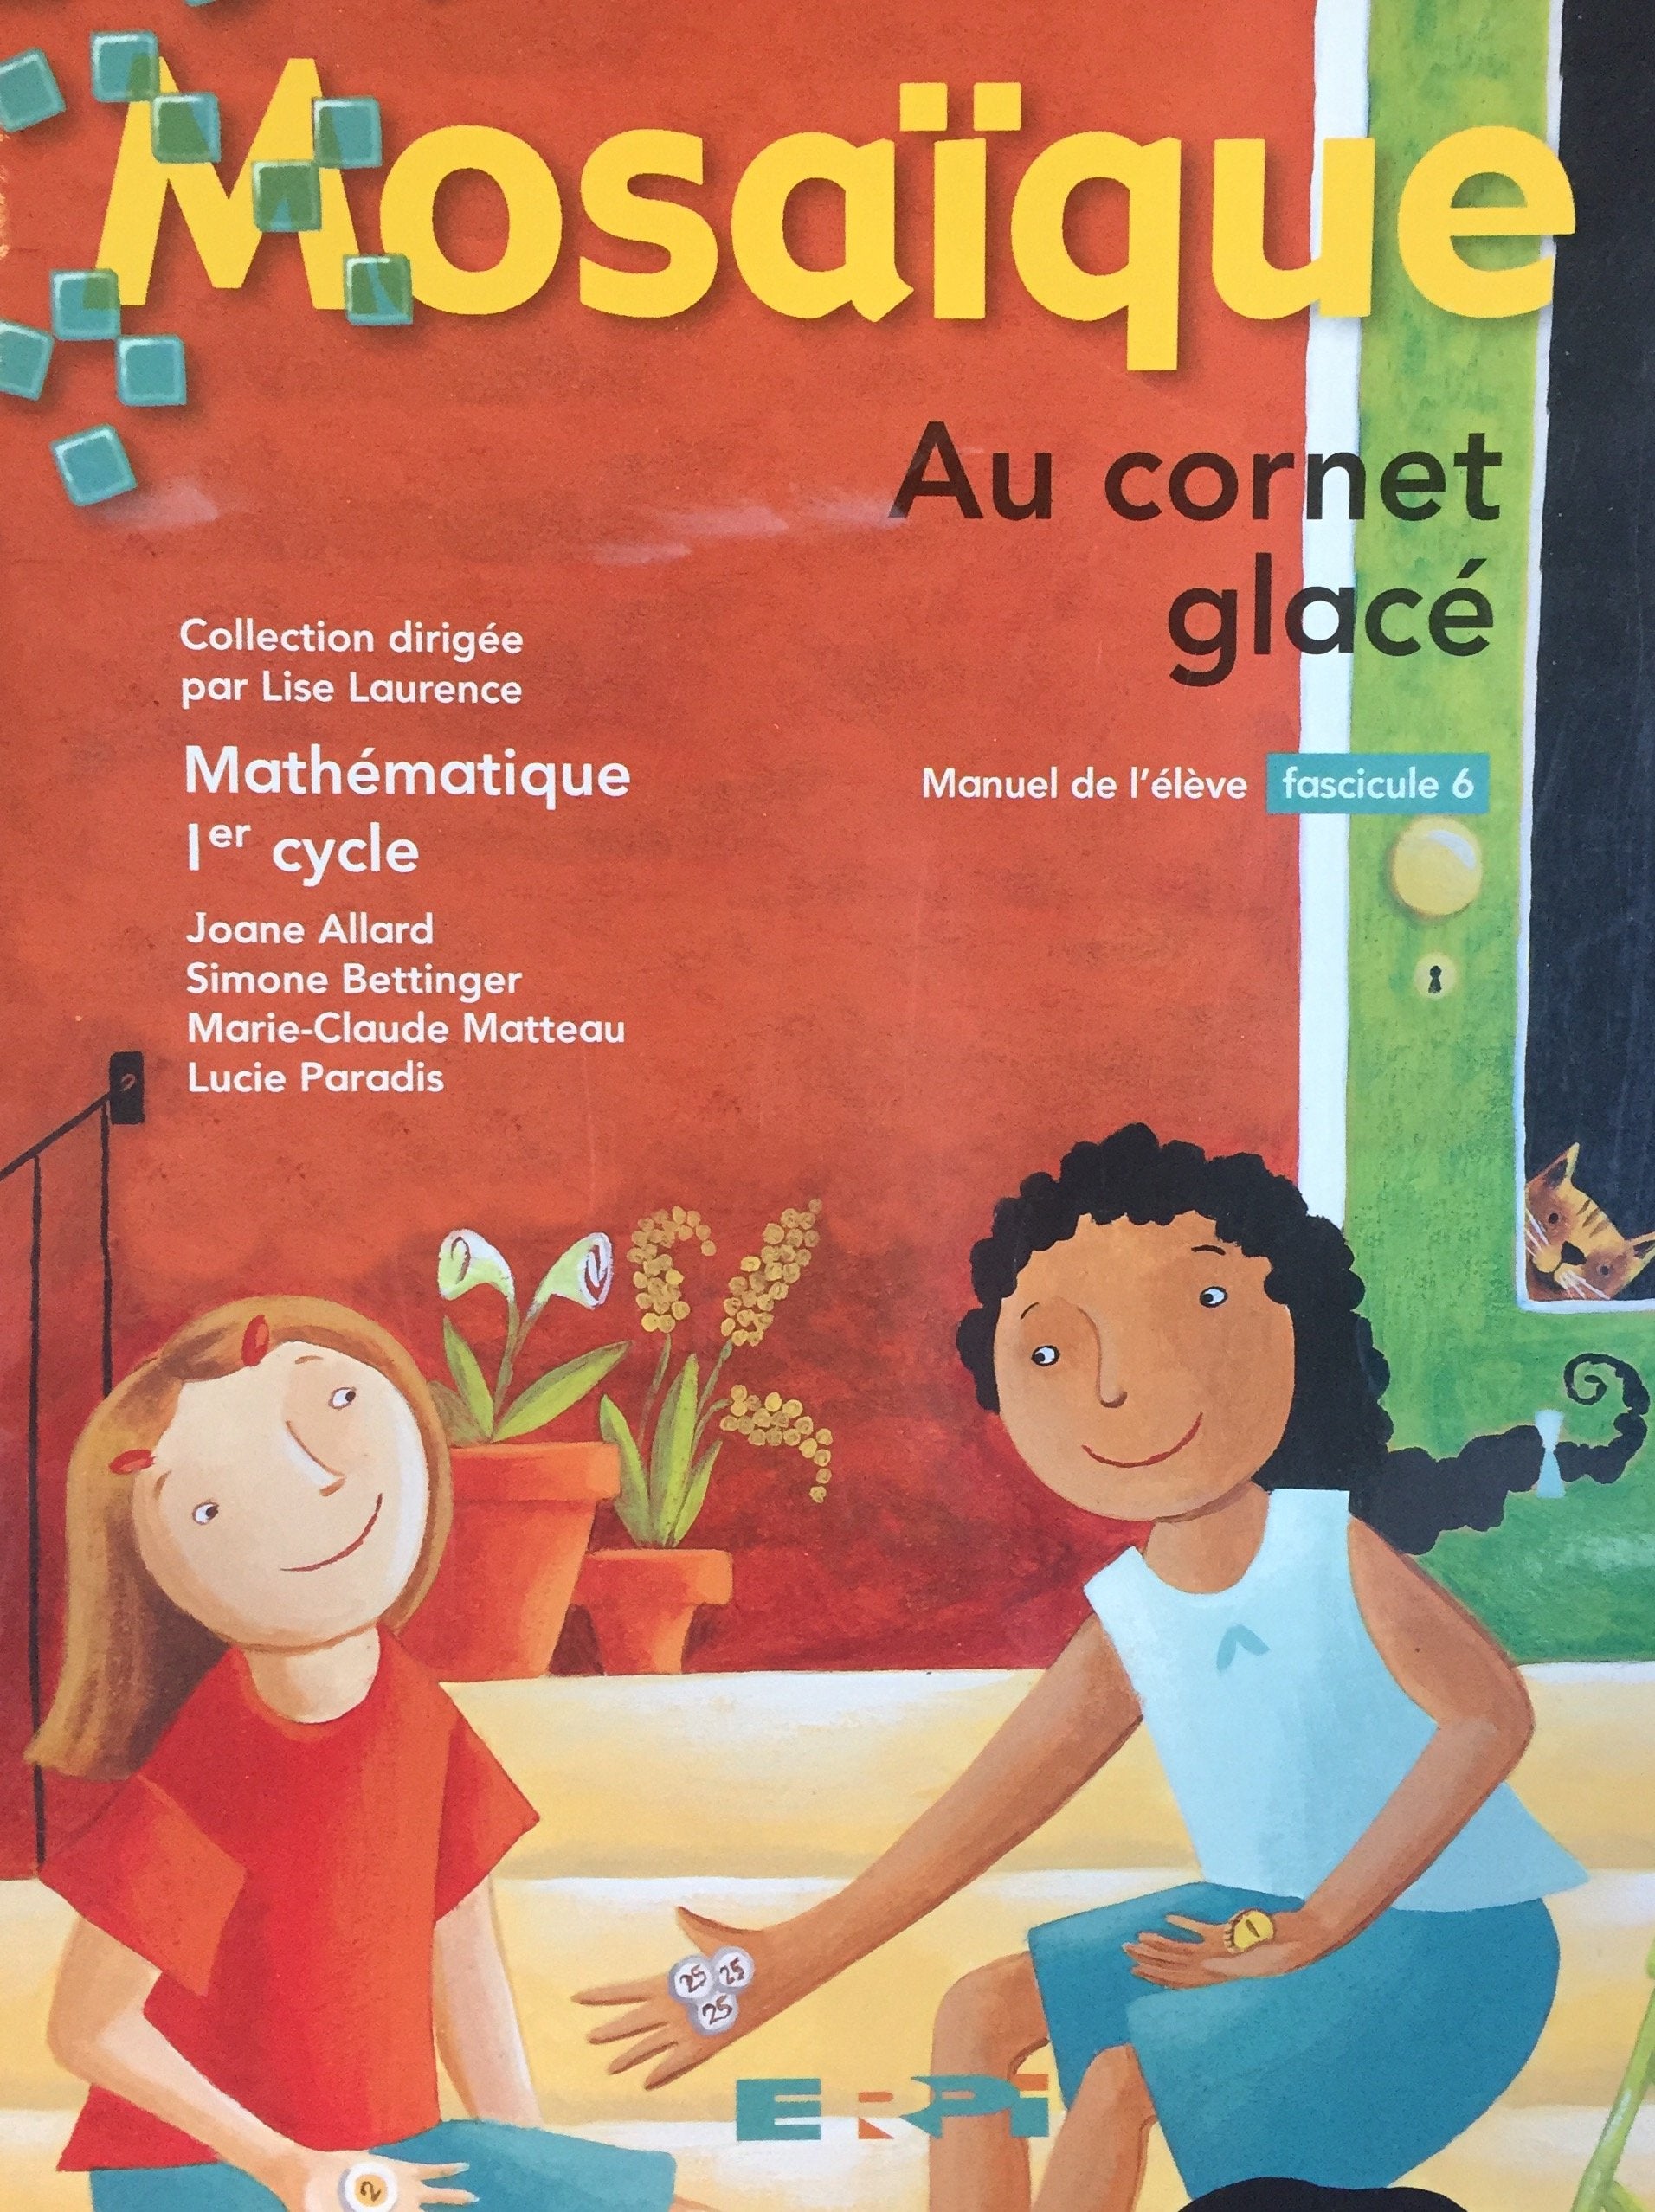 Livre ISBN 276131140X Fascicule Mosaïque # 6 : Au cornet glacé - Mathématique 1er cycle (manuel de l'élève)